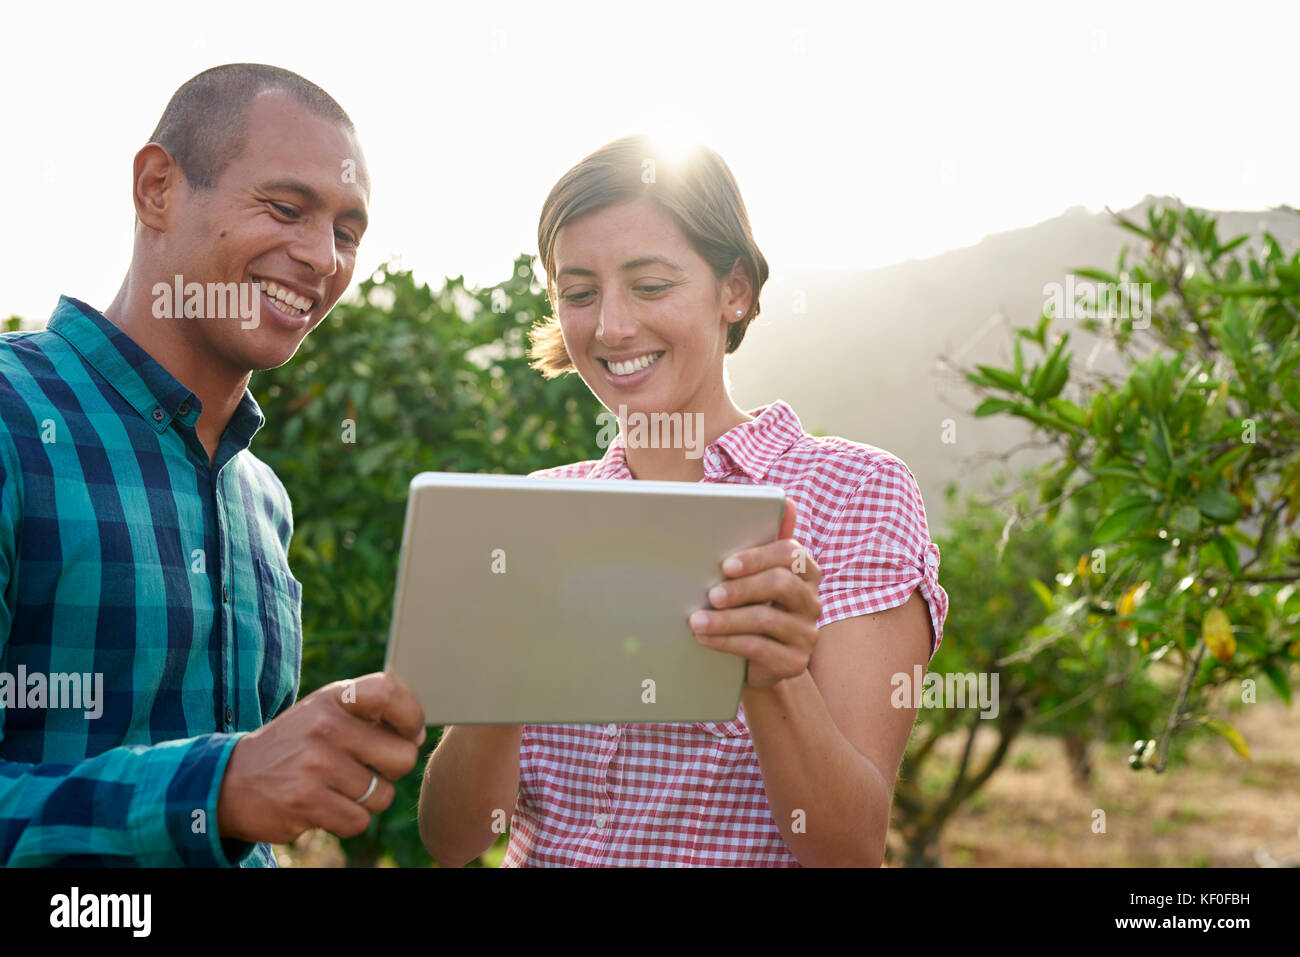 Lächelnden jungen Paar an der Tablet-PC in einem Obstgarten suchen Stockfoto